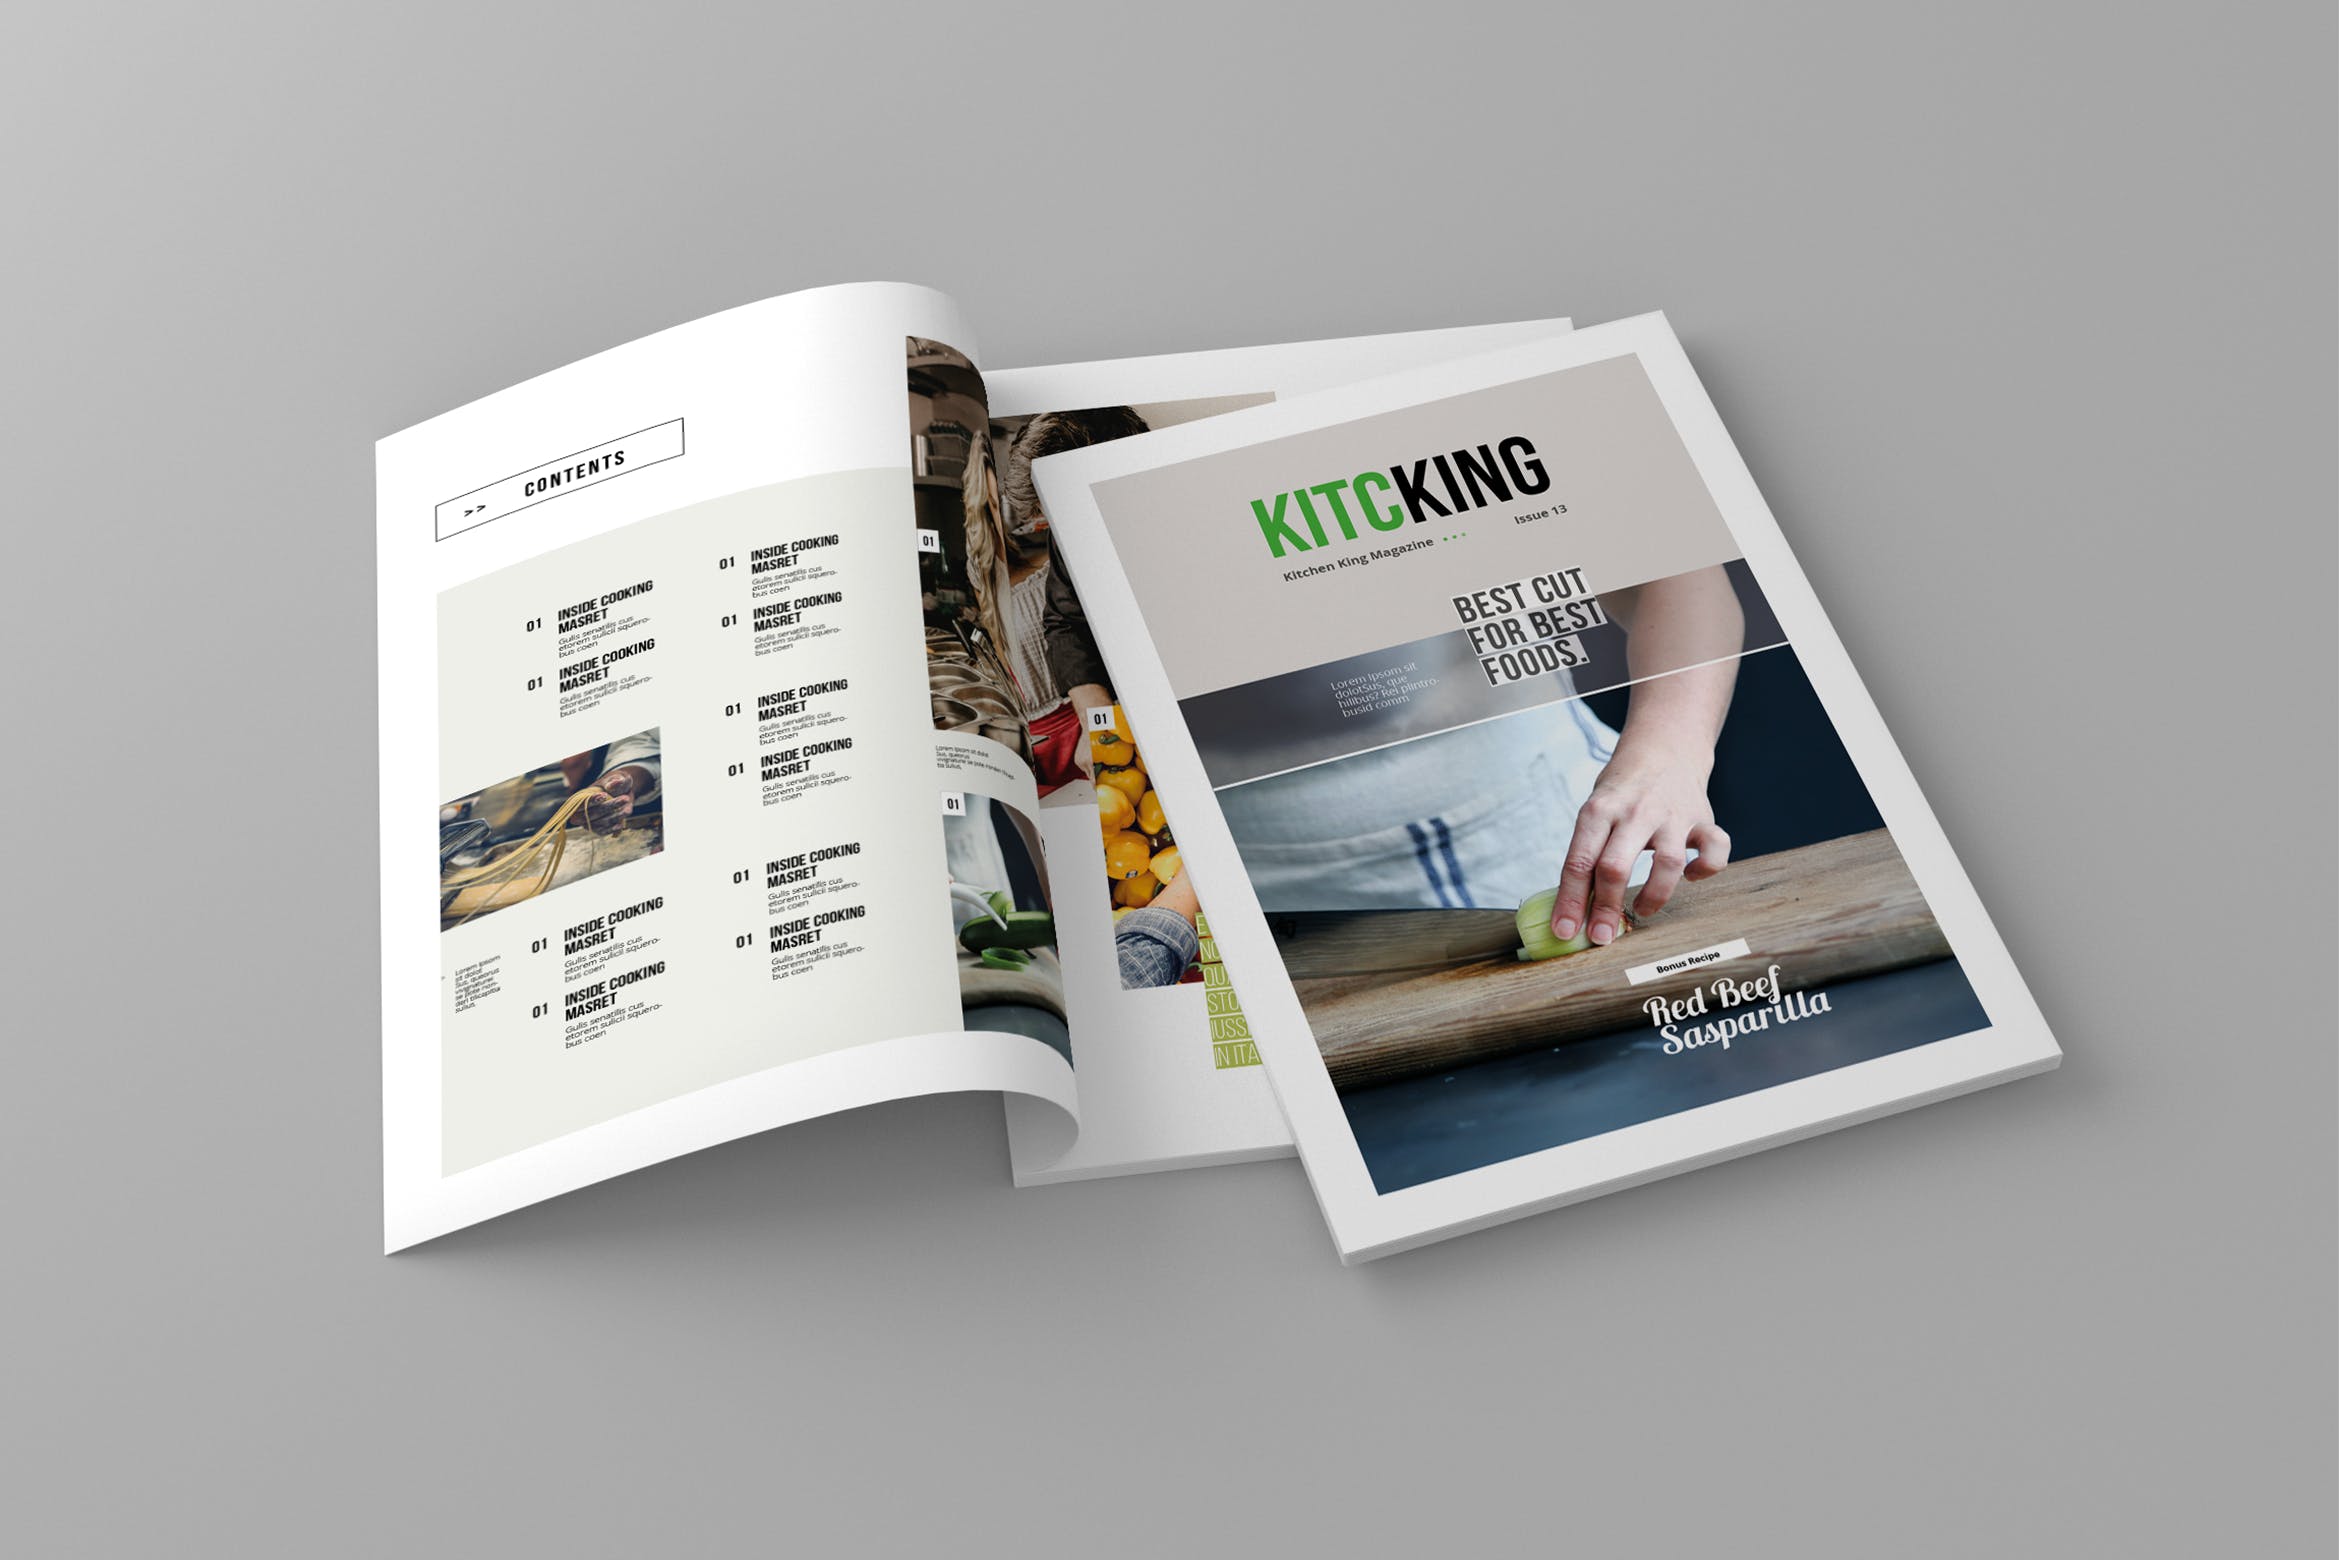 美食蚂蚁素材精选杂志排版设计模板 Kitcking – Magazine Template插图